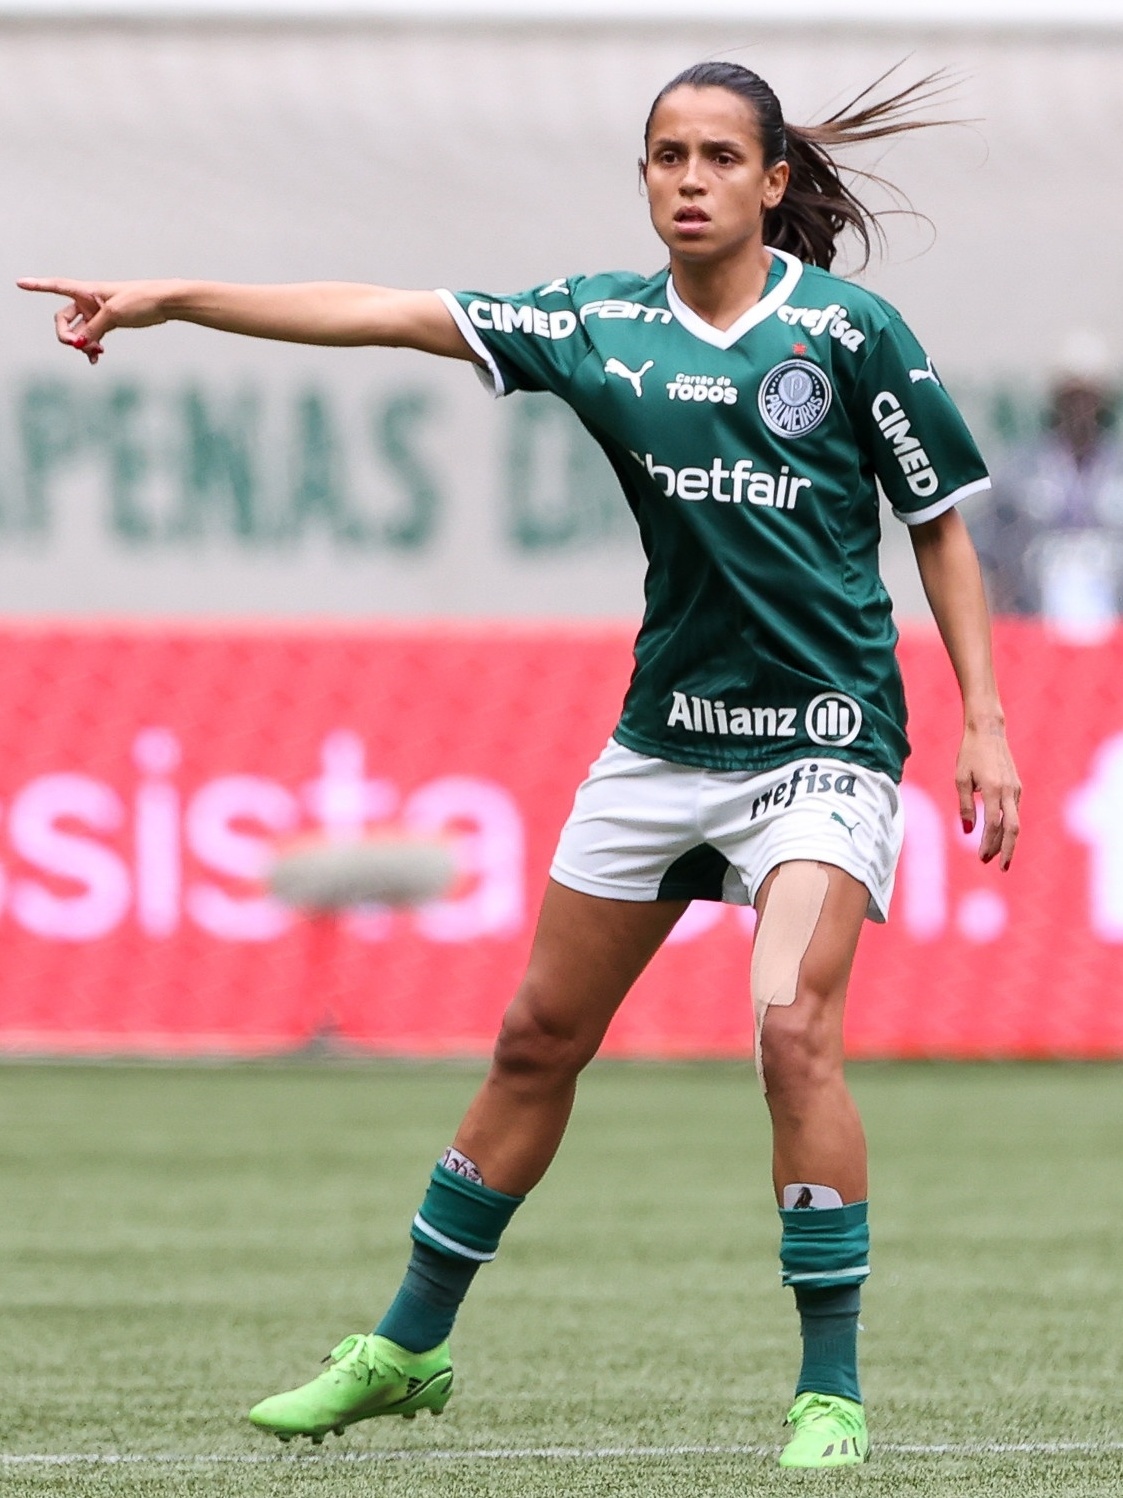 Palmeiras feminino tem cinco saídas, três chegadas e indefinição sobre Bia  Zaneratto para 2023, futebol feminino